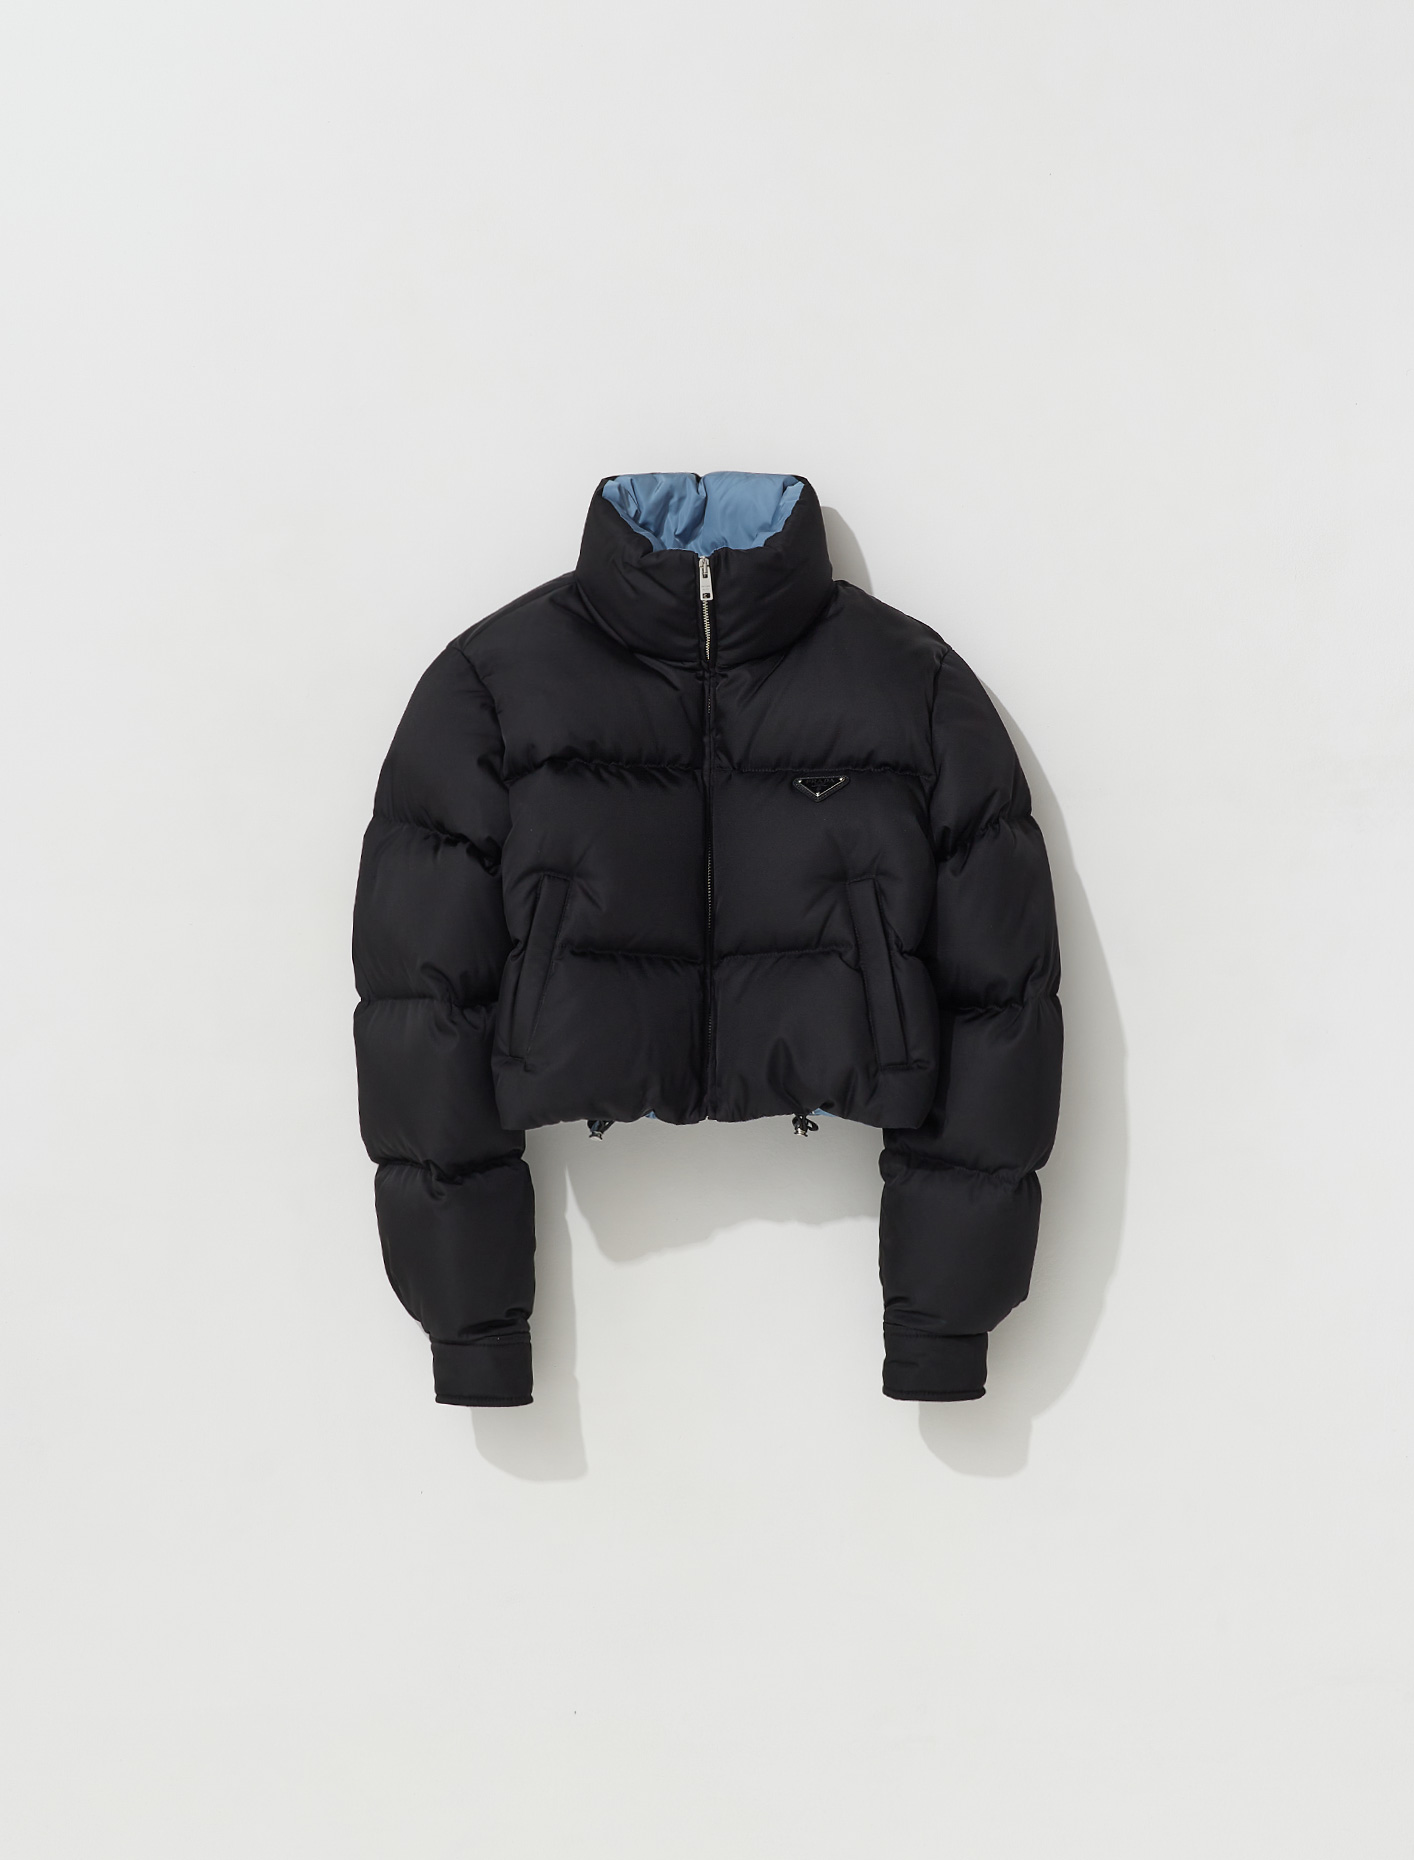 Prada Re-Nylon Cropped Puffer Jacket in Black | Voo Store Berlin |  Worldwide Shipping